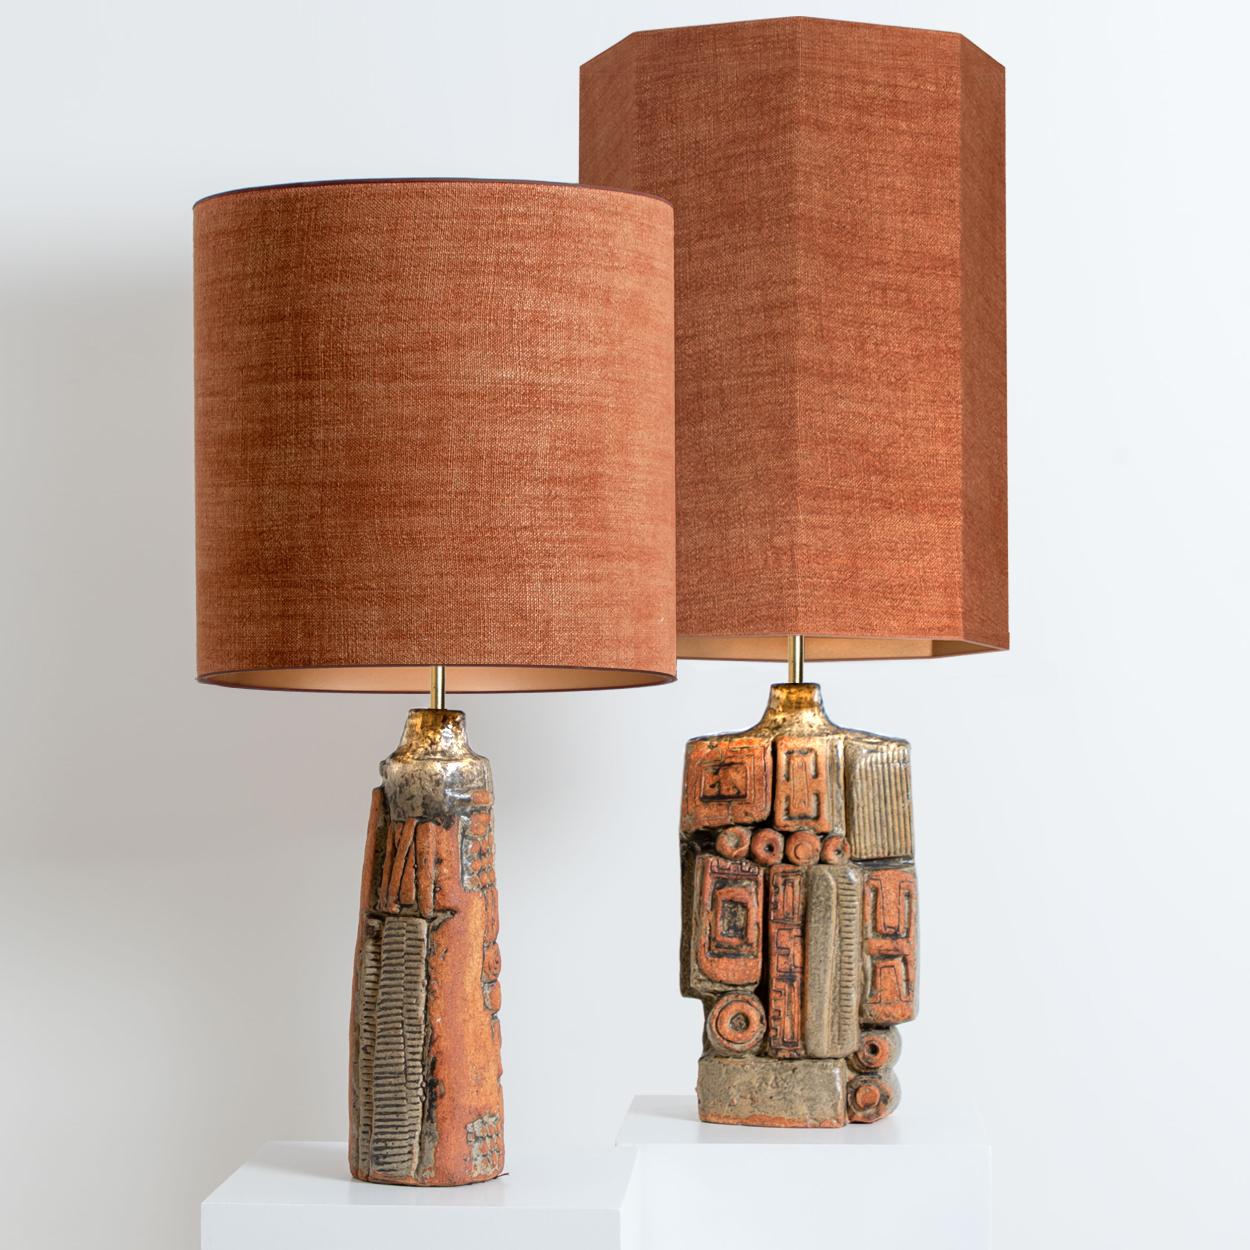 handmade ceramic lamp base